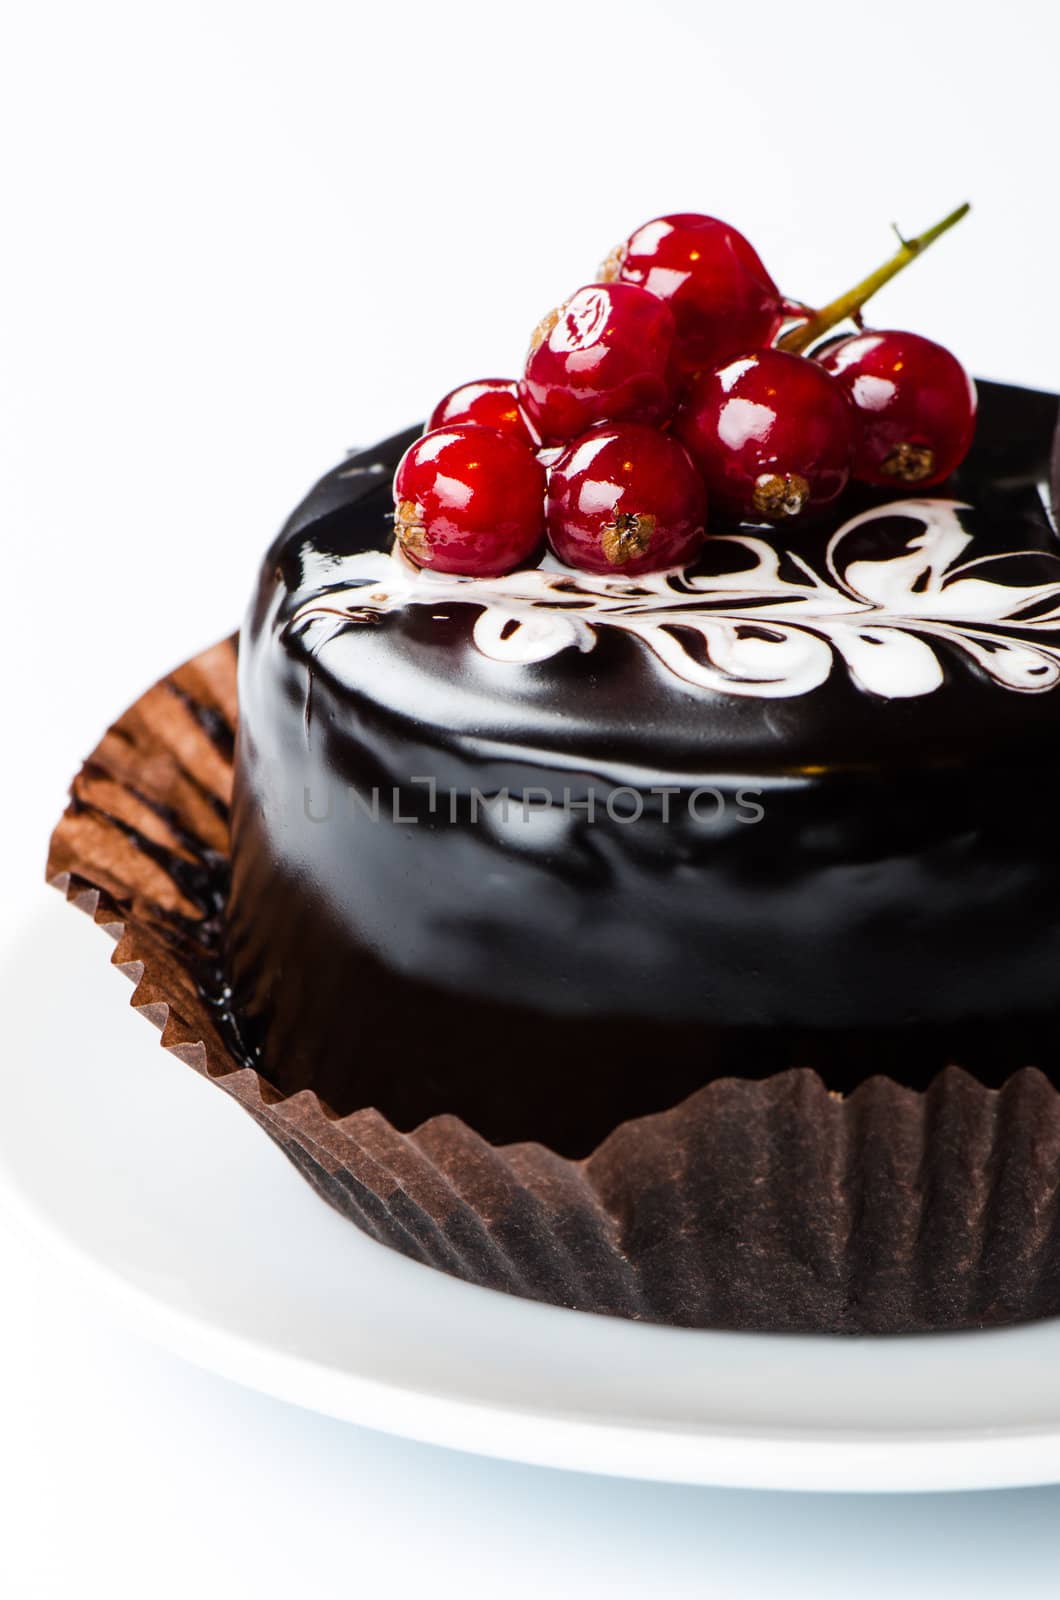 Сhocolate cake with redcurrants on white